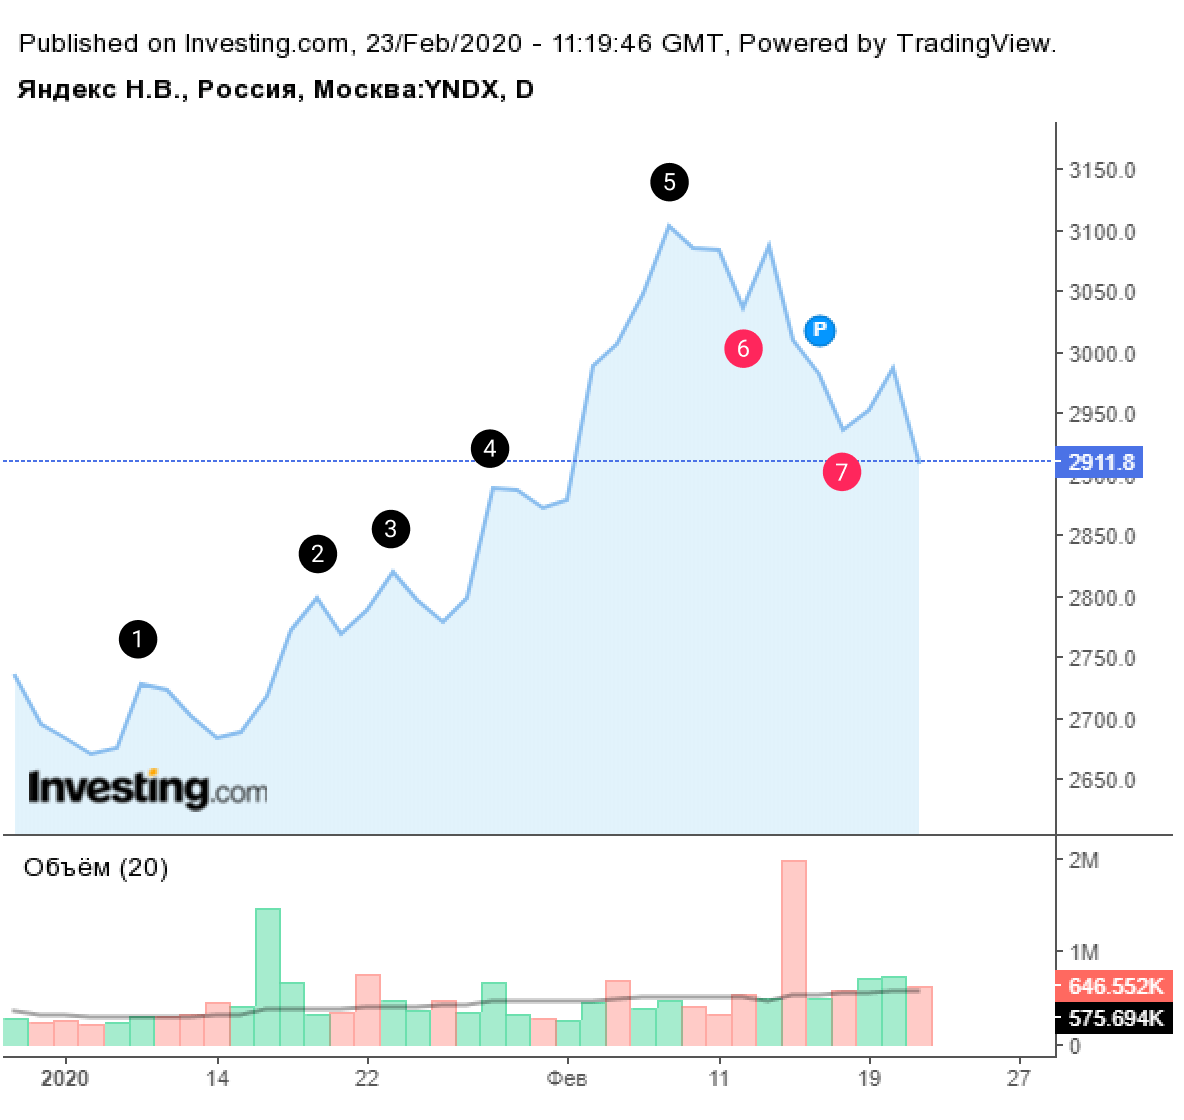 Дневной линейный график акций Яндекса на Московской бирже. Повышающиеся максимумы 1⁠—⁠5 показывают растущий тренд с 6 января по 7 февраля. 14 февраля растущий тренд был сломлен, и дальше на графике появились понижающиеся минимумы 6 и 7